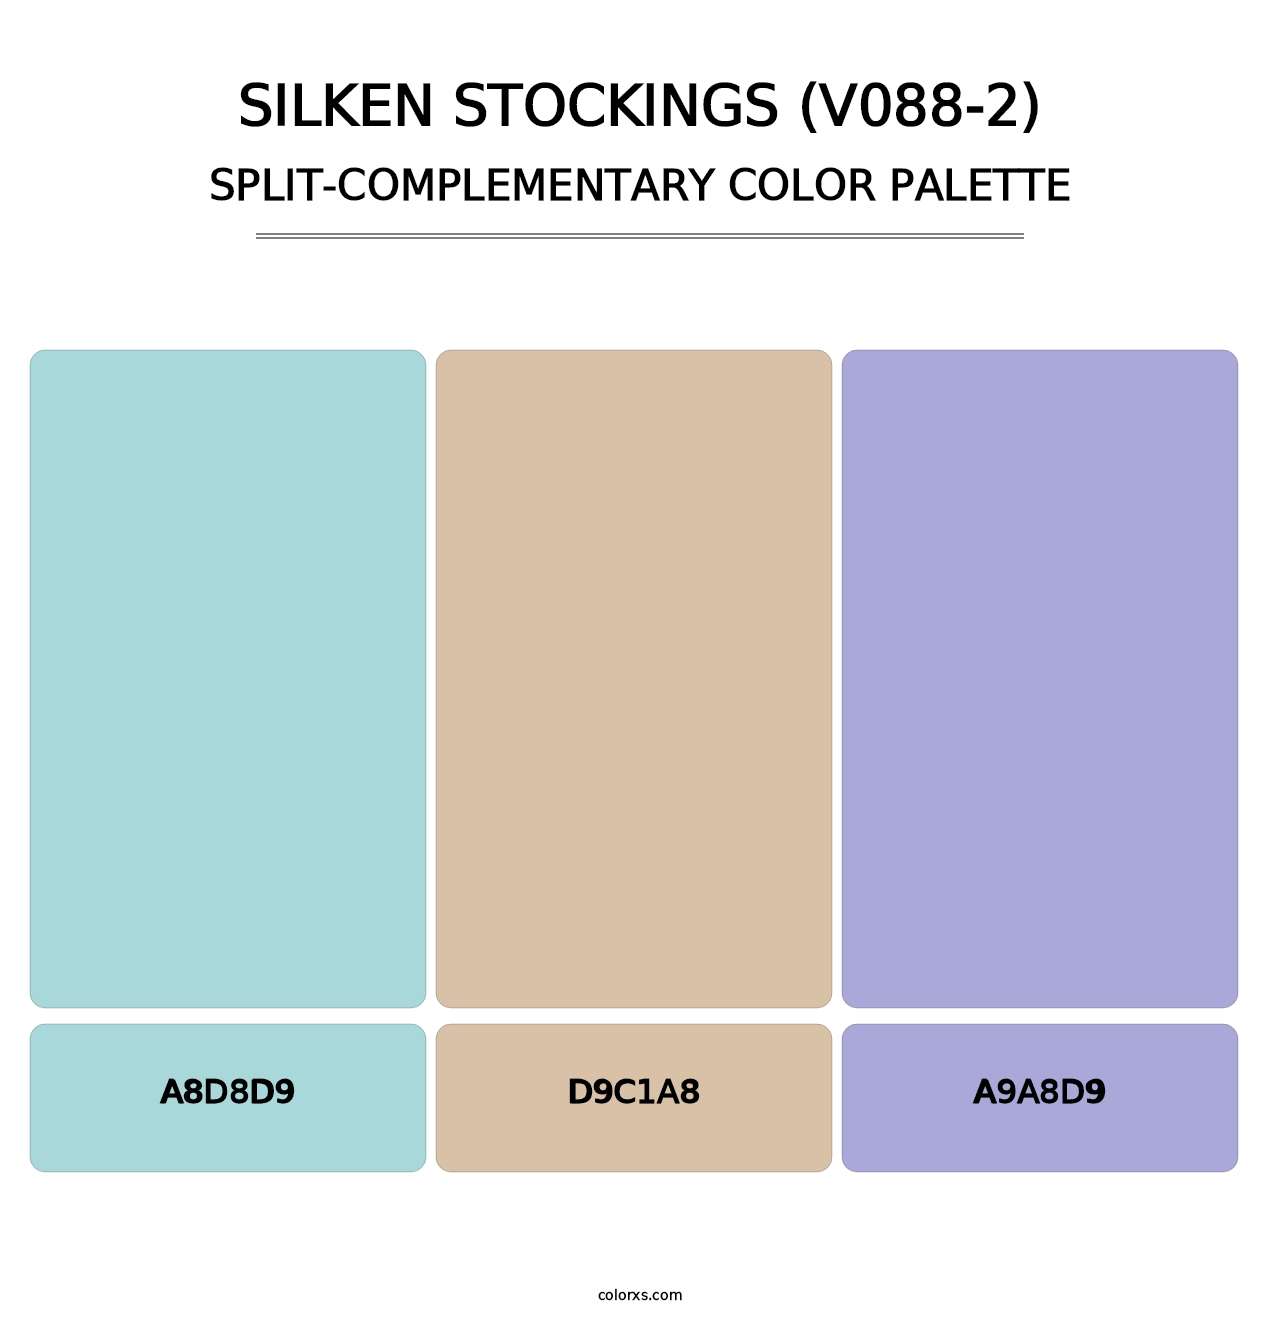 Silken Stockings (V088-2) - Split-Complementary Color Palette